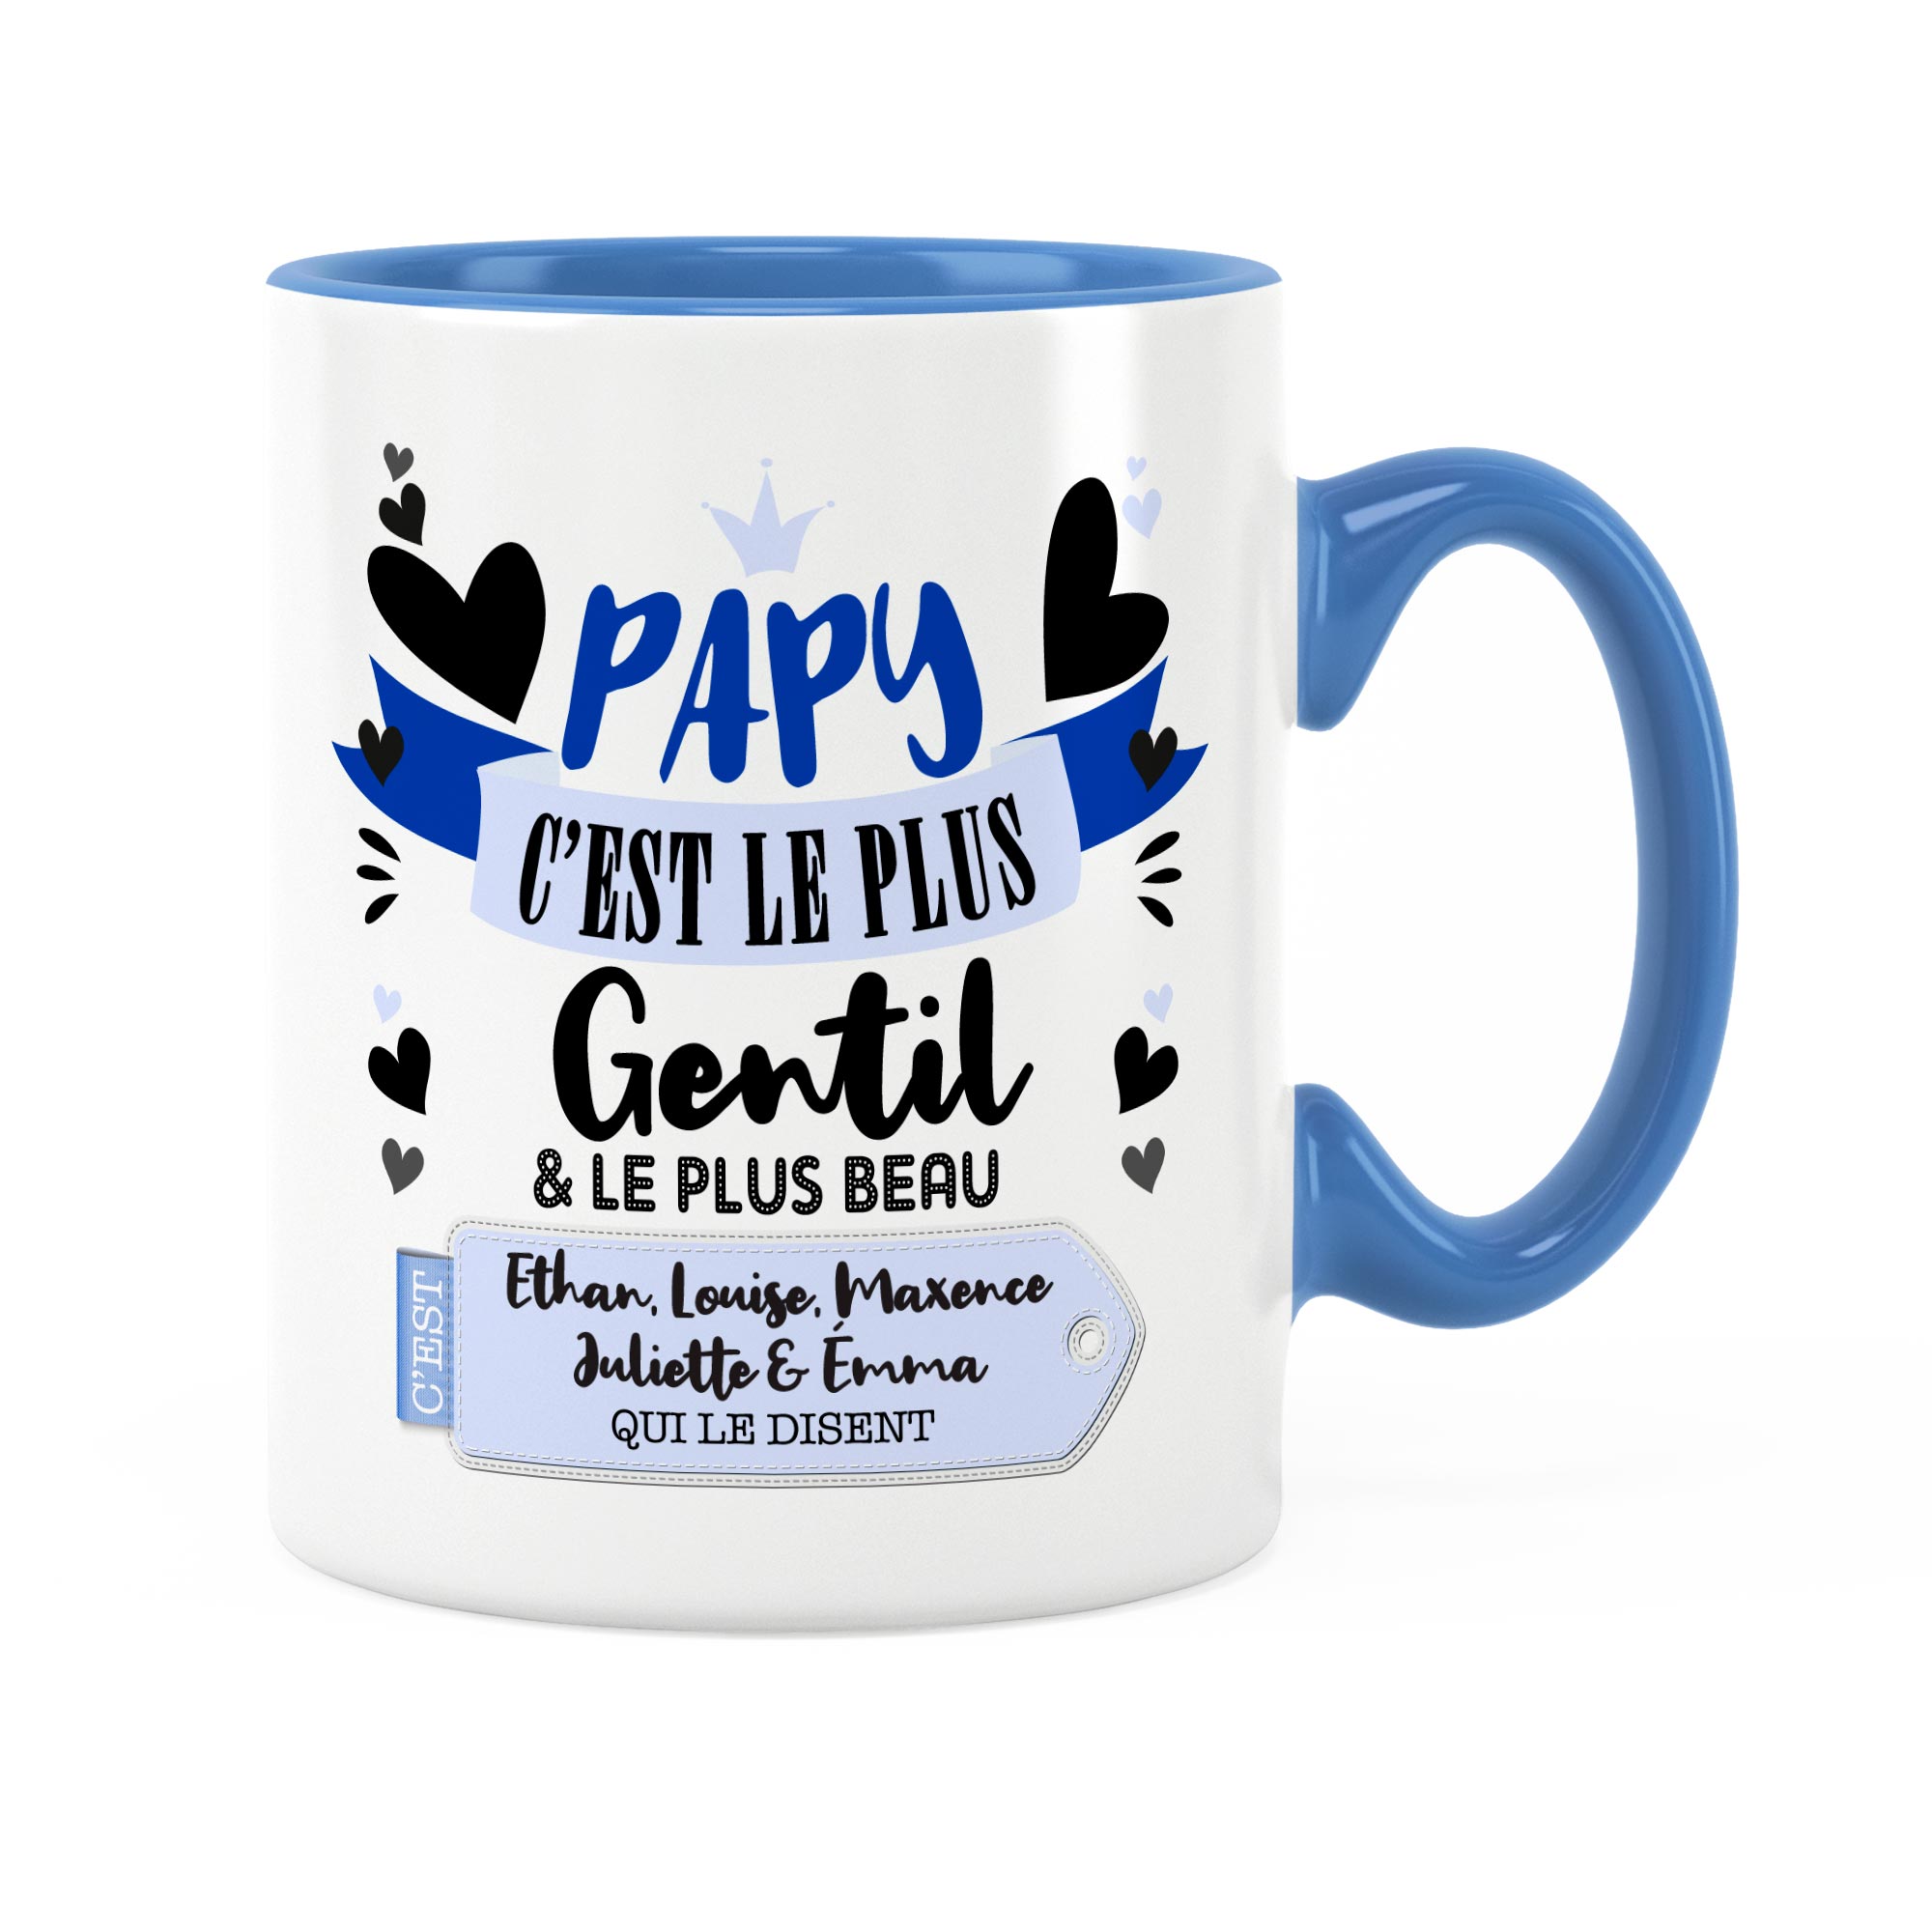 Cadeau papy | Idée cadeau mug avec prénom papy gentil